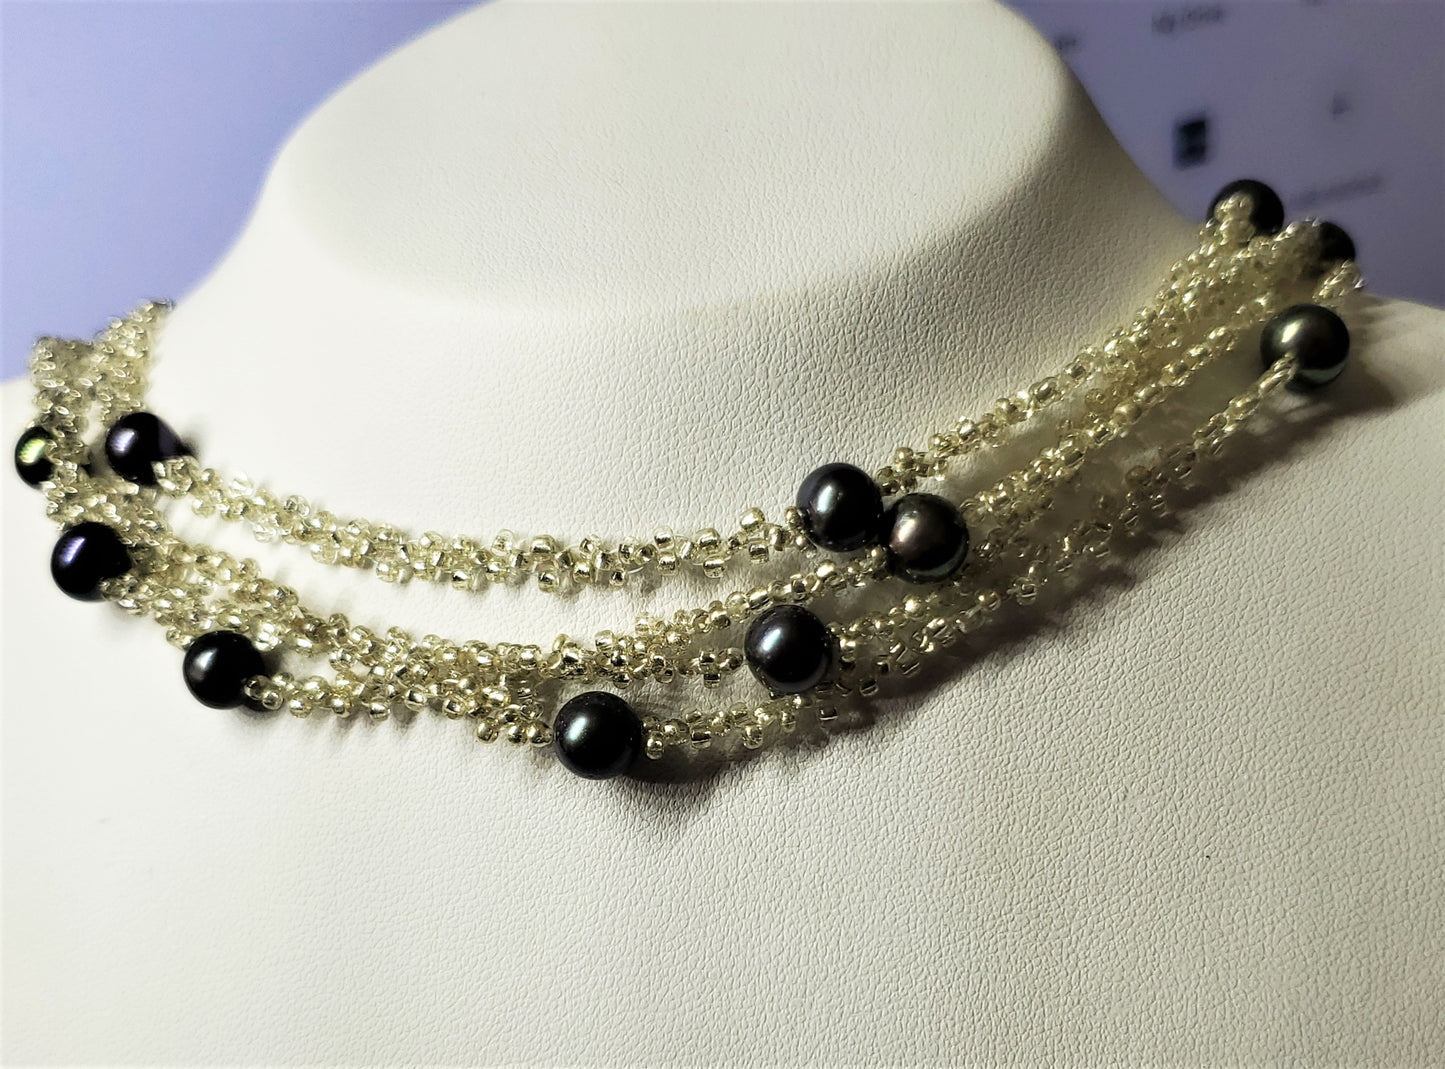 Collar envolvente de perlas negras del Pacífico con cuentas de plata hecho a mano